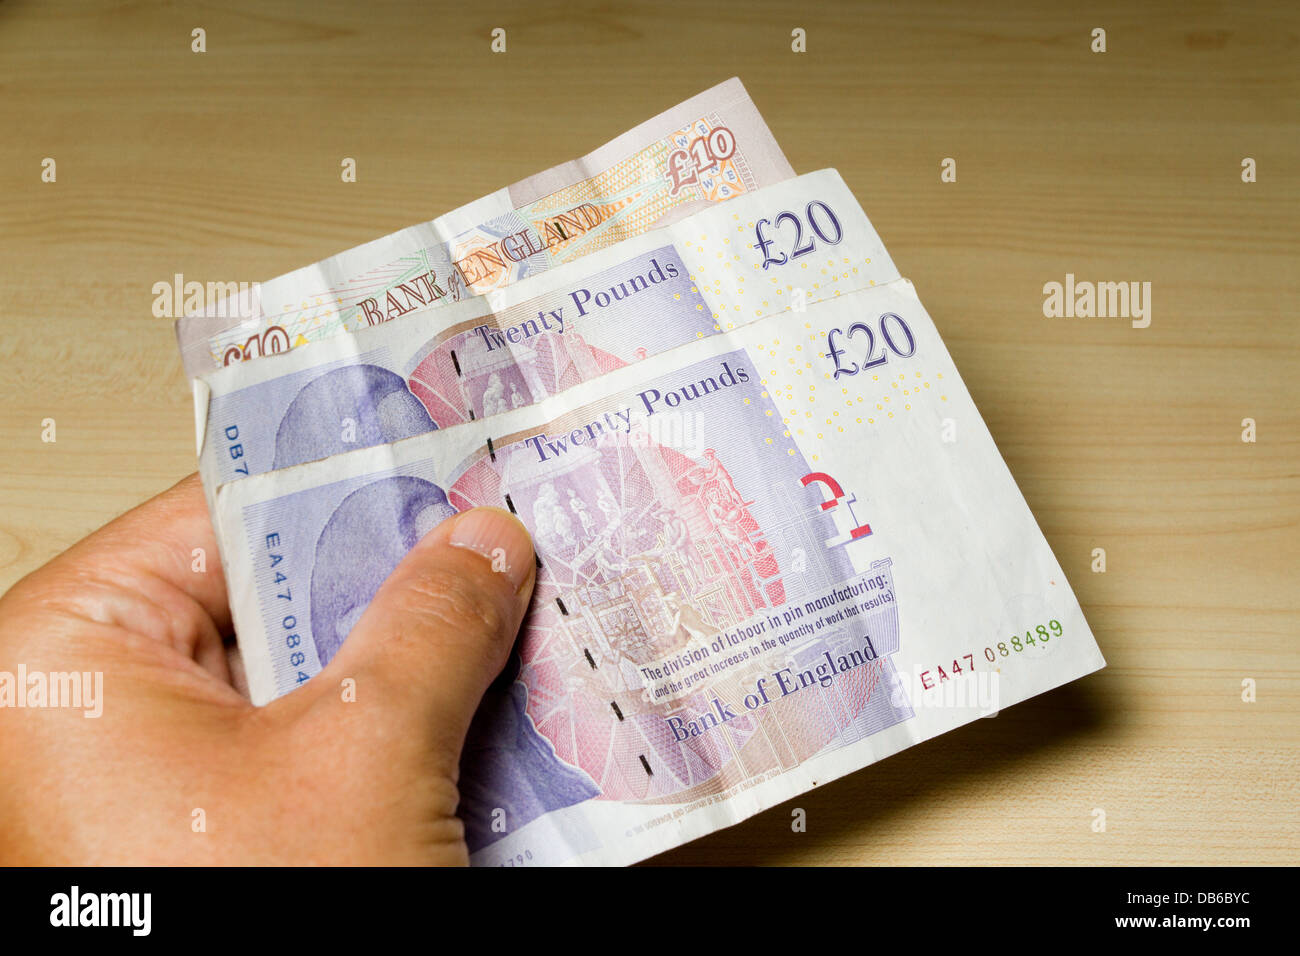 Un mans tenere in mano 50 sterline in contanti, costituito da 2 € 20 e 1 £10 pound note, England, Regno Unito Foto Stock